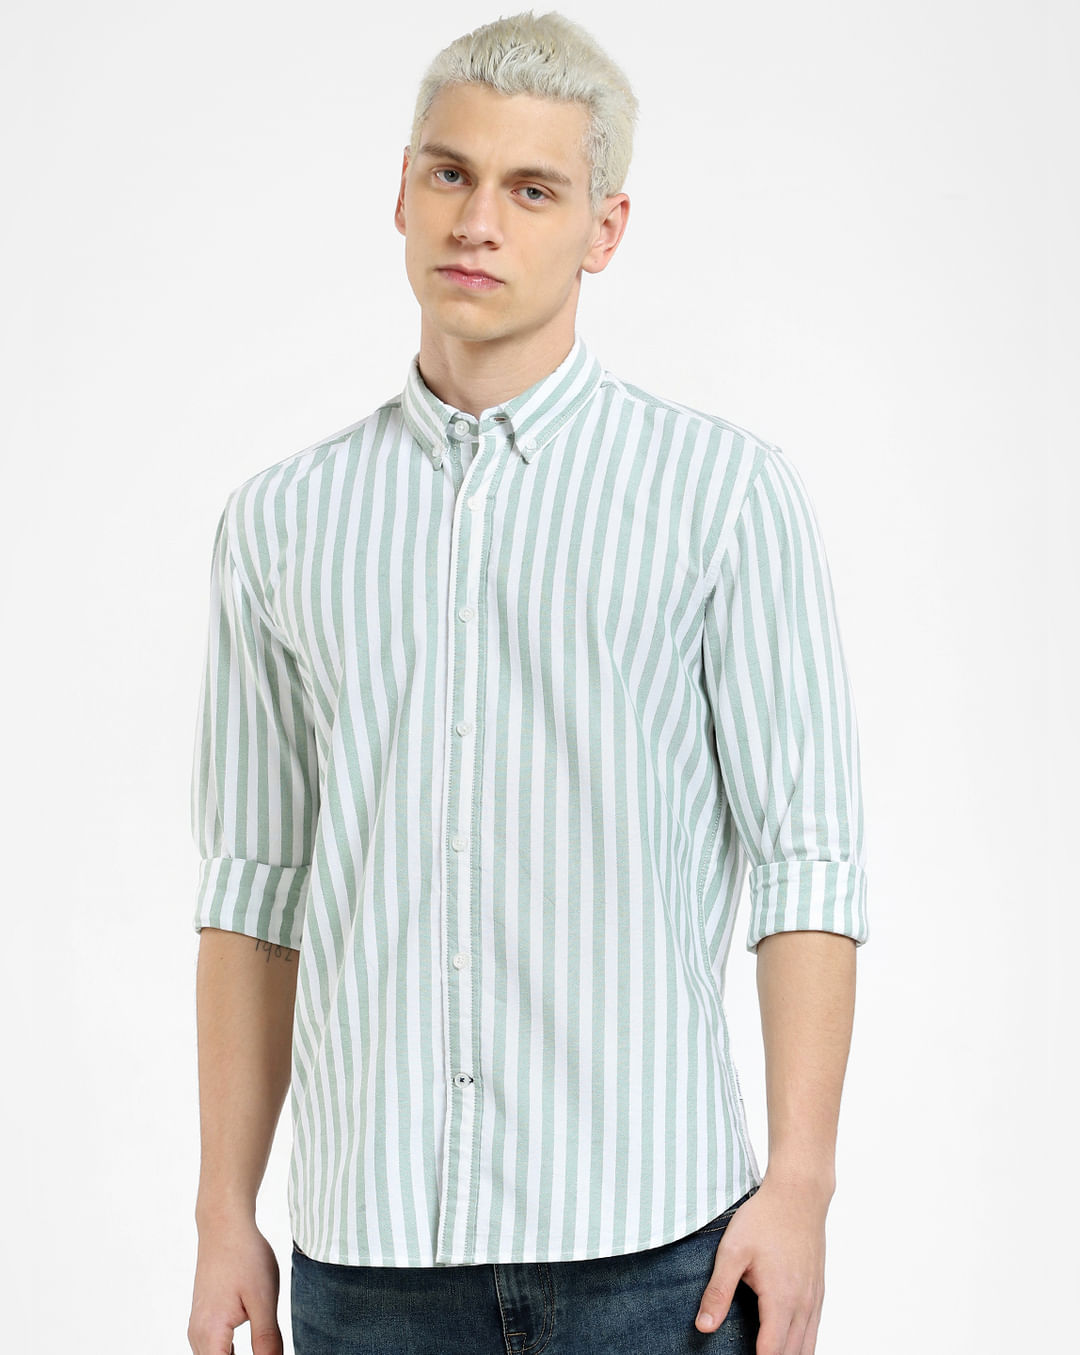 Buy Green Striped Full Sleeves Shirt for Men